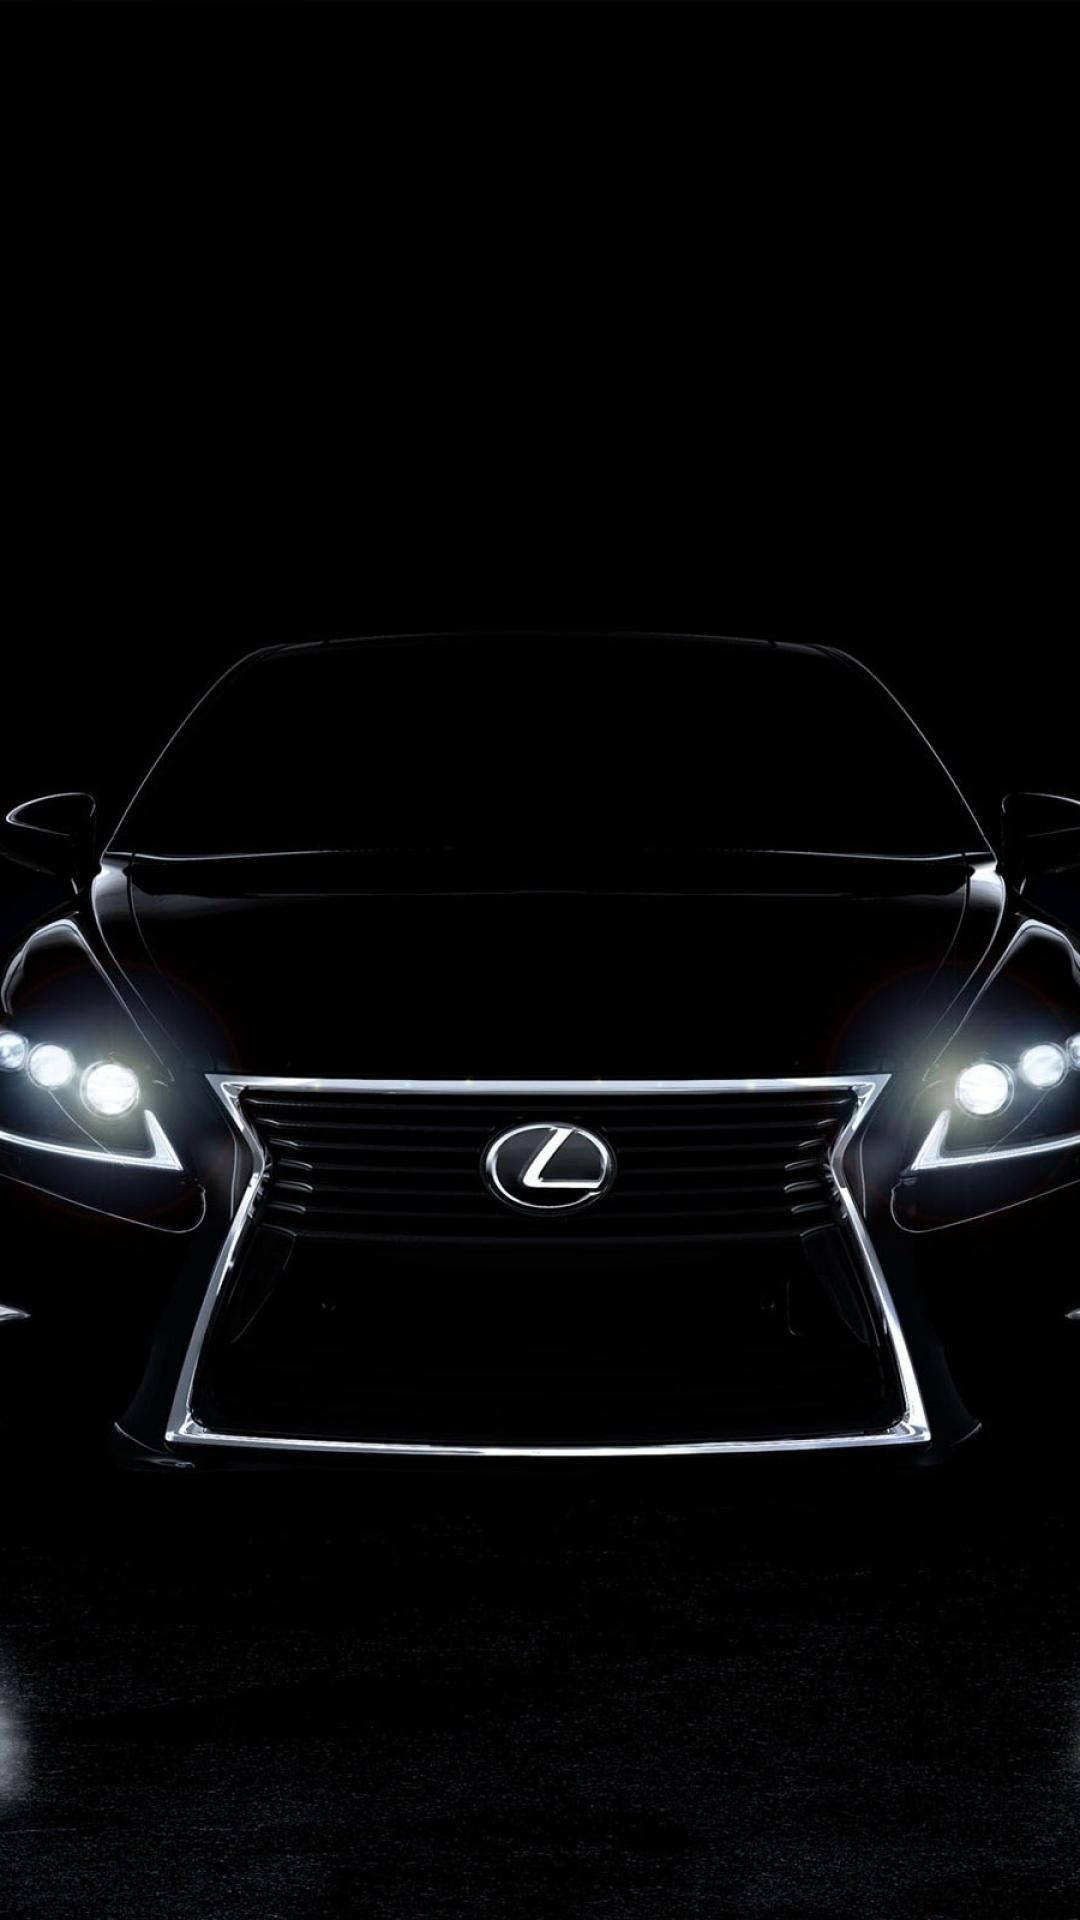 The Illuminated Emblem Of Luxury - Lexus Logo Background